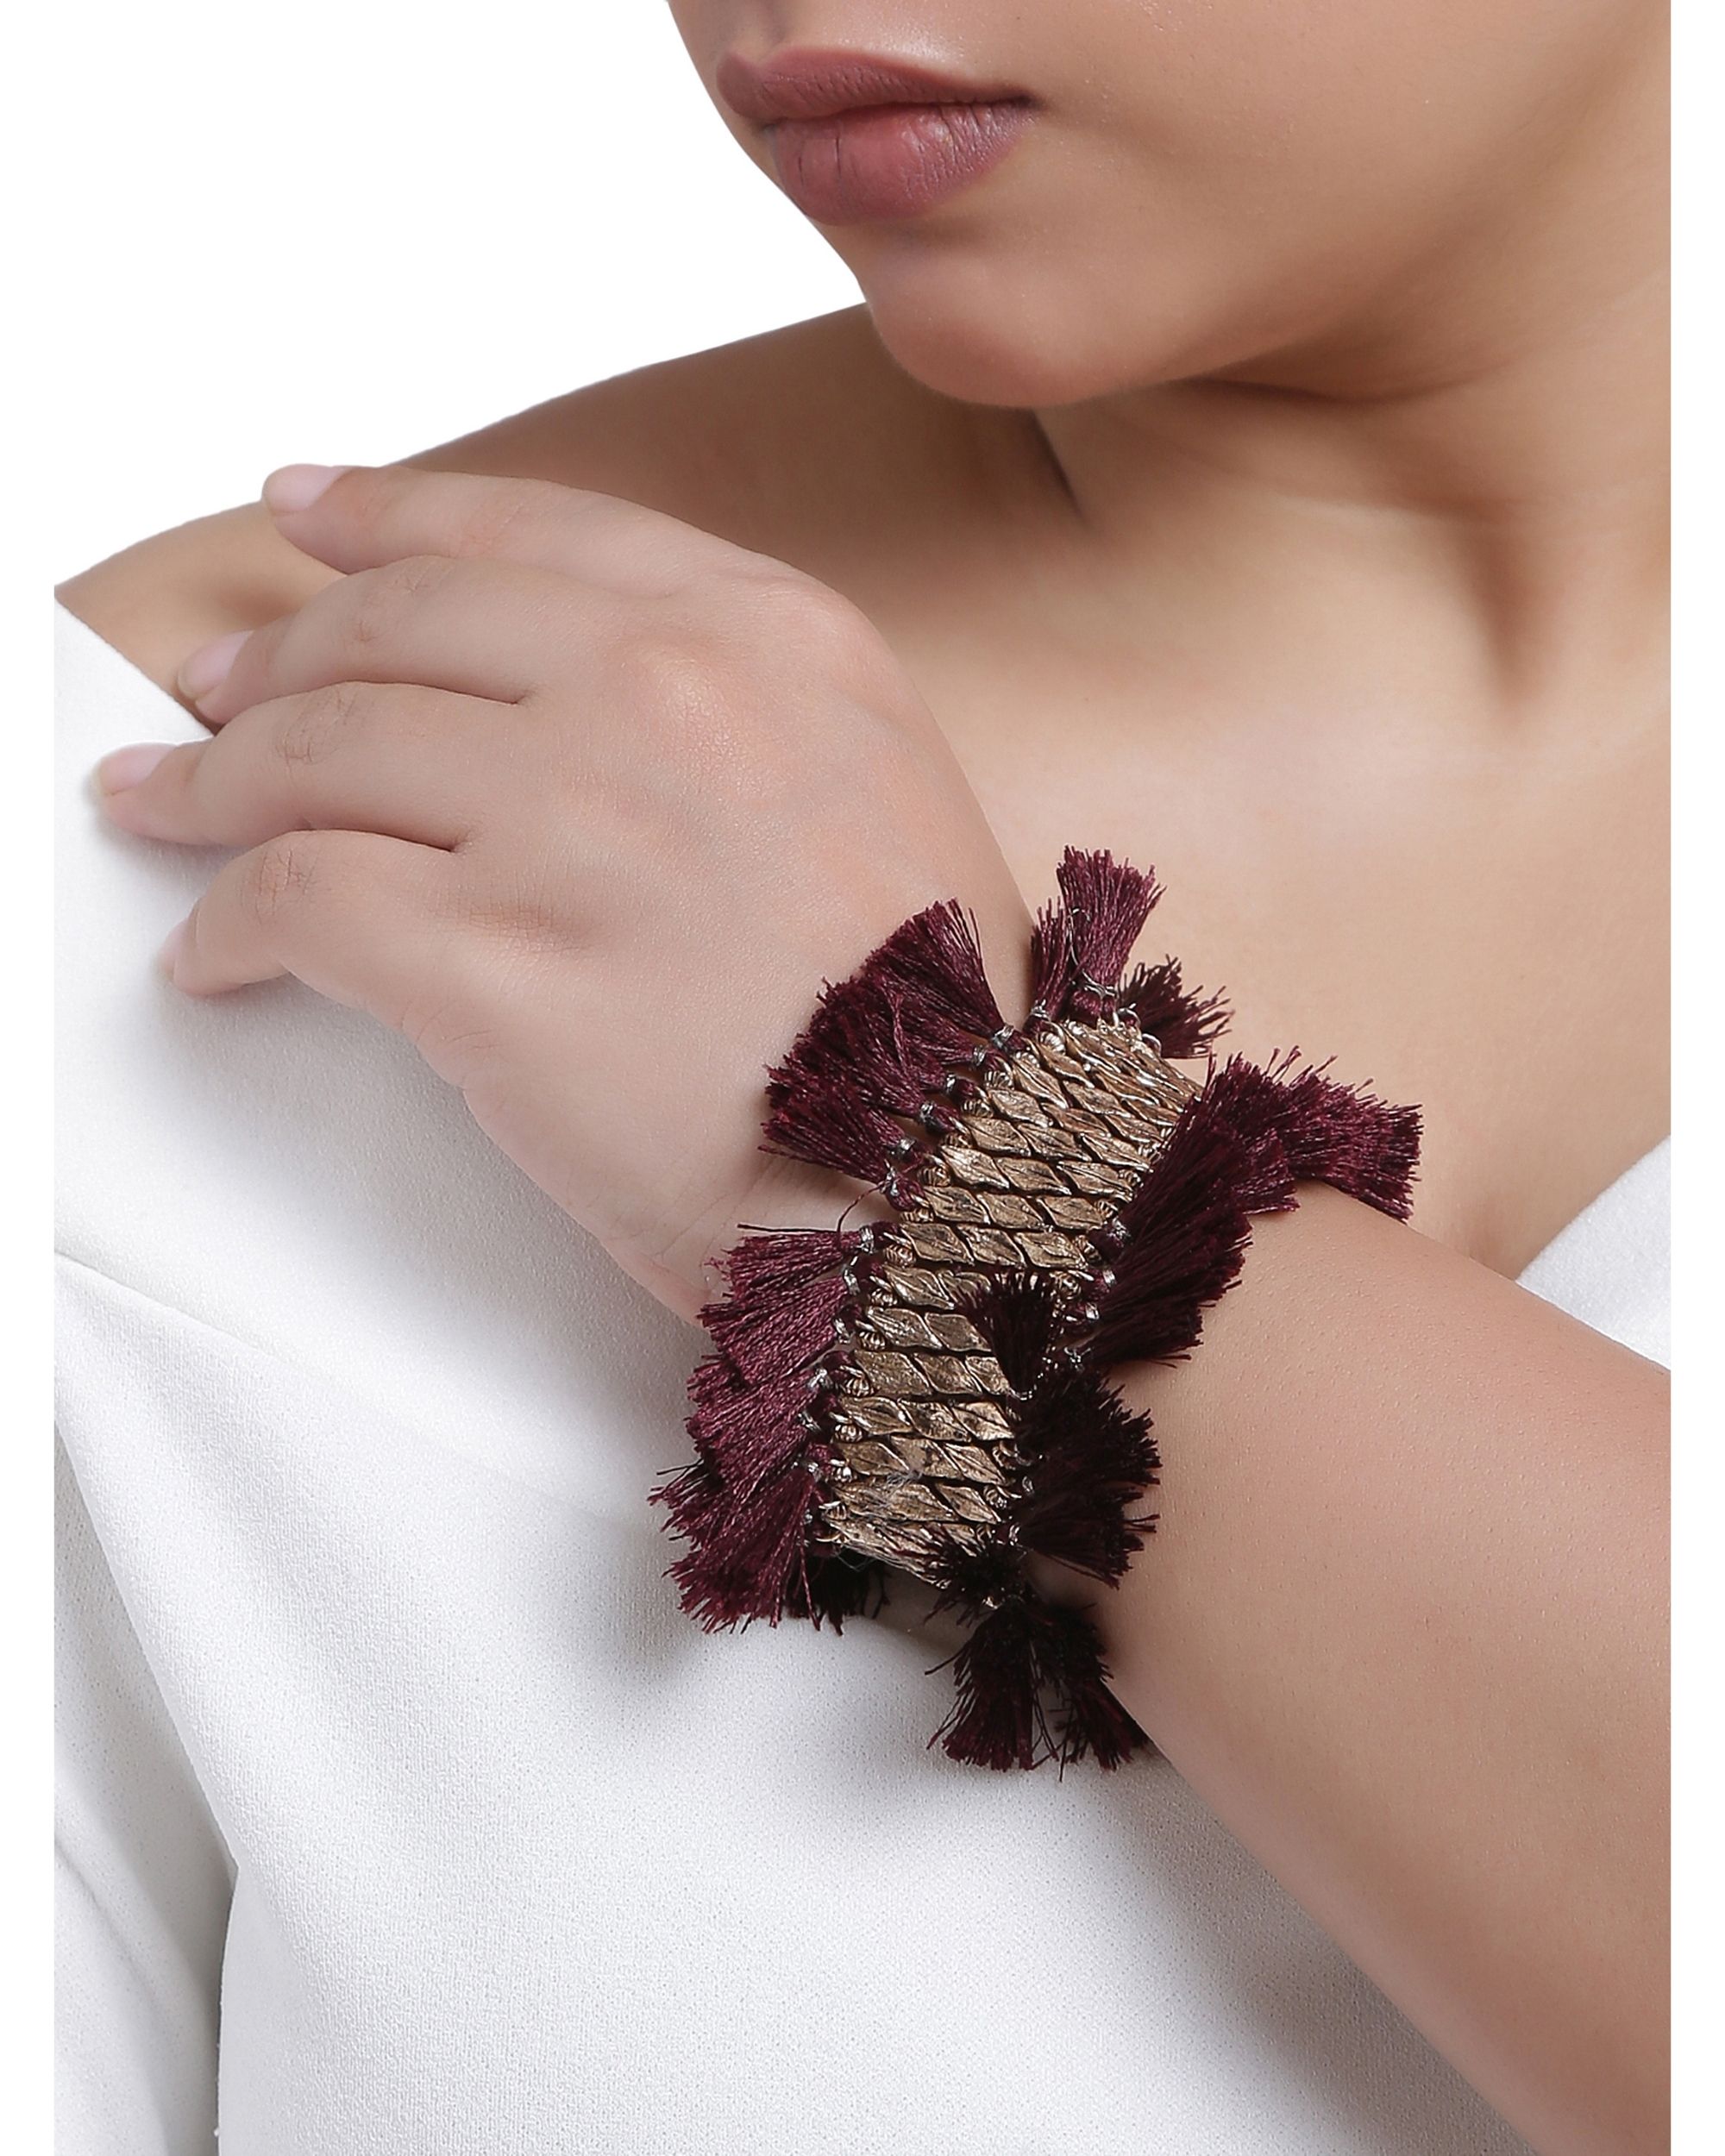 Beads and burgundy tasseled bracelet